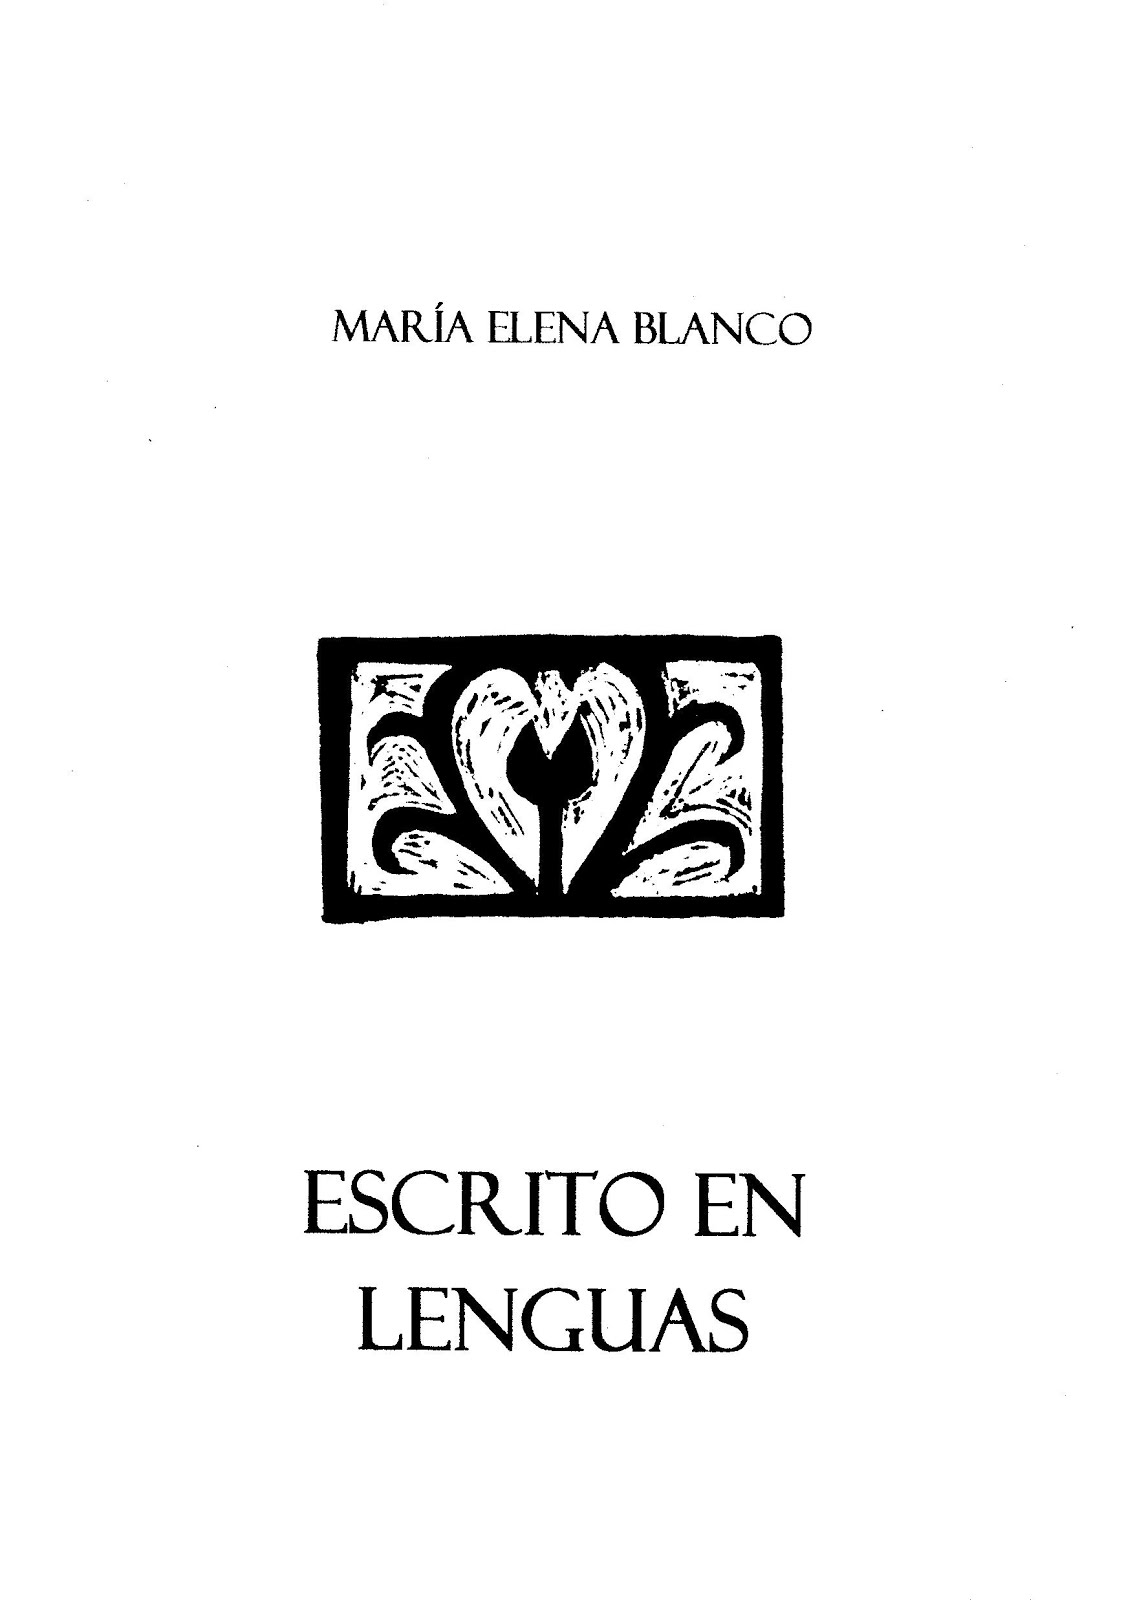 Escrito en lenguas (Ed. Verbo(des)nudo, Santiago de Chile, 2014)